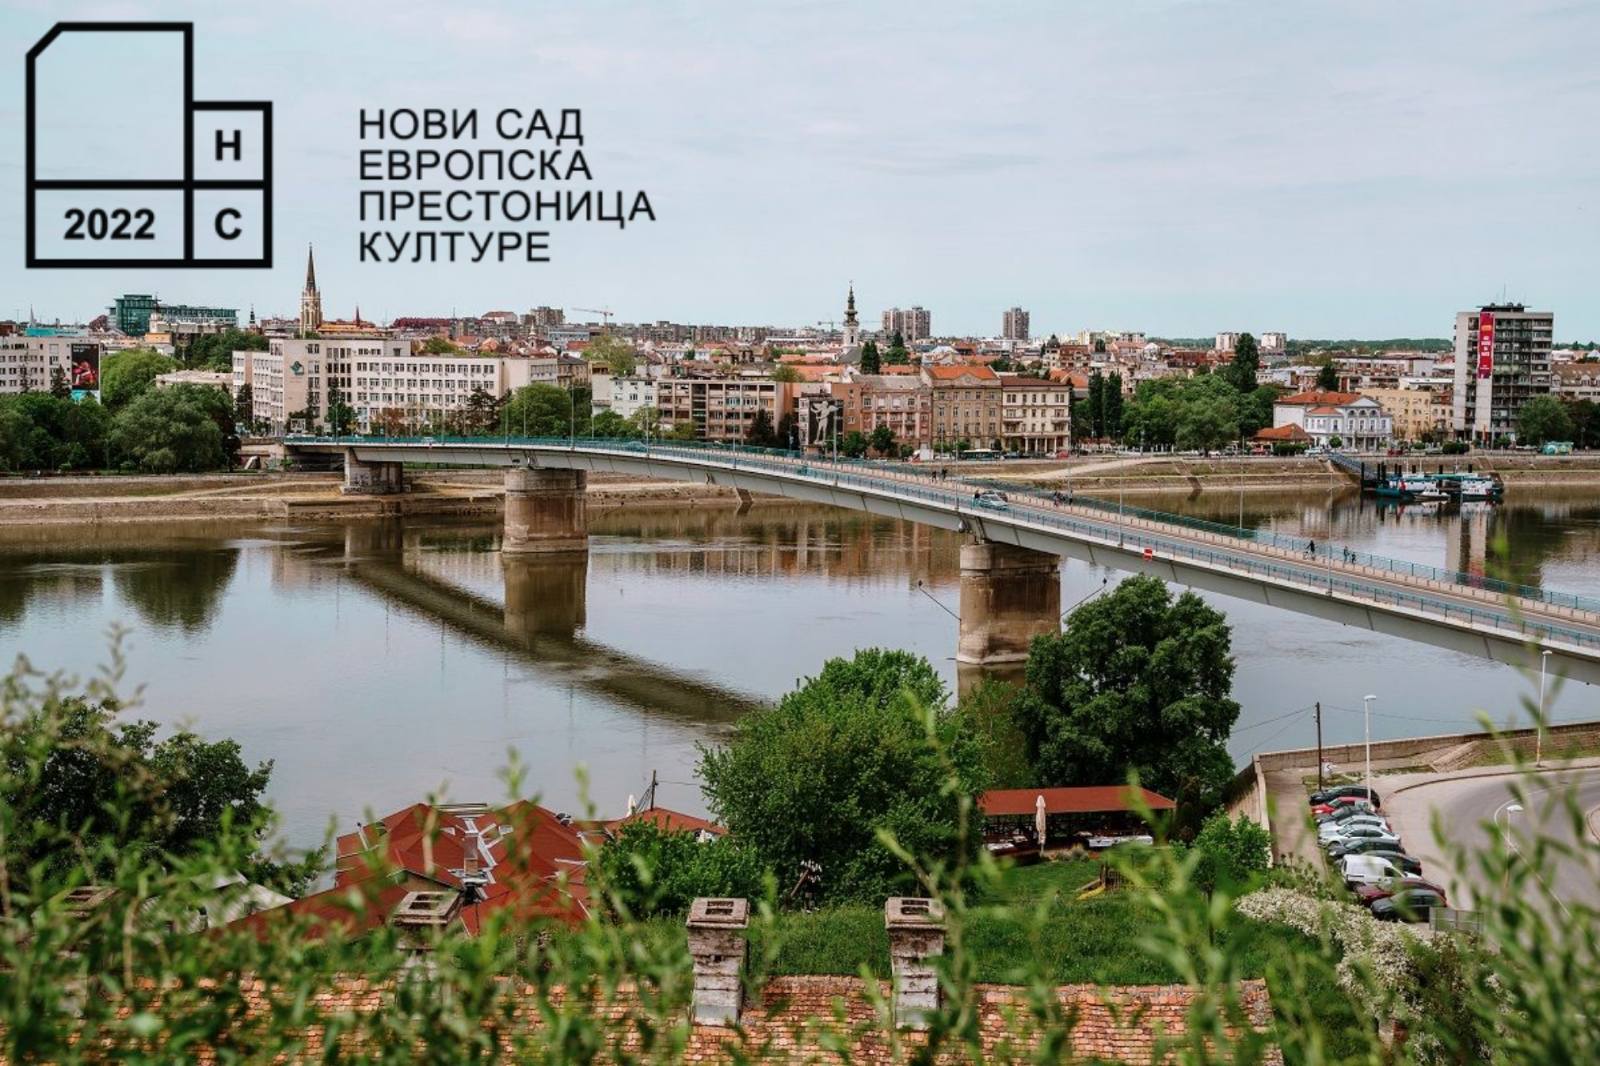  Фондацијa „Нови Сад 2021 – Европска престоница културе“ добитник престижне награде „Мелина Меркури”